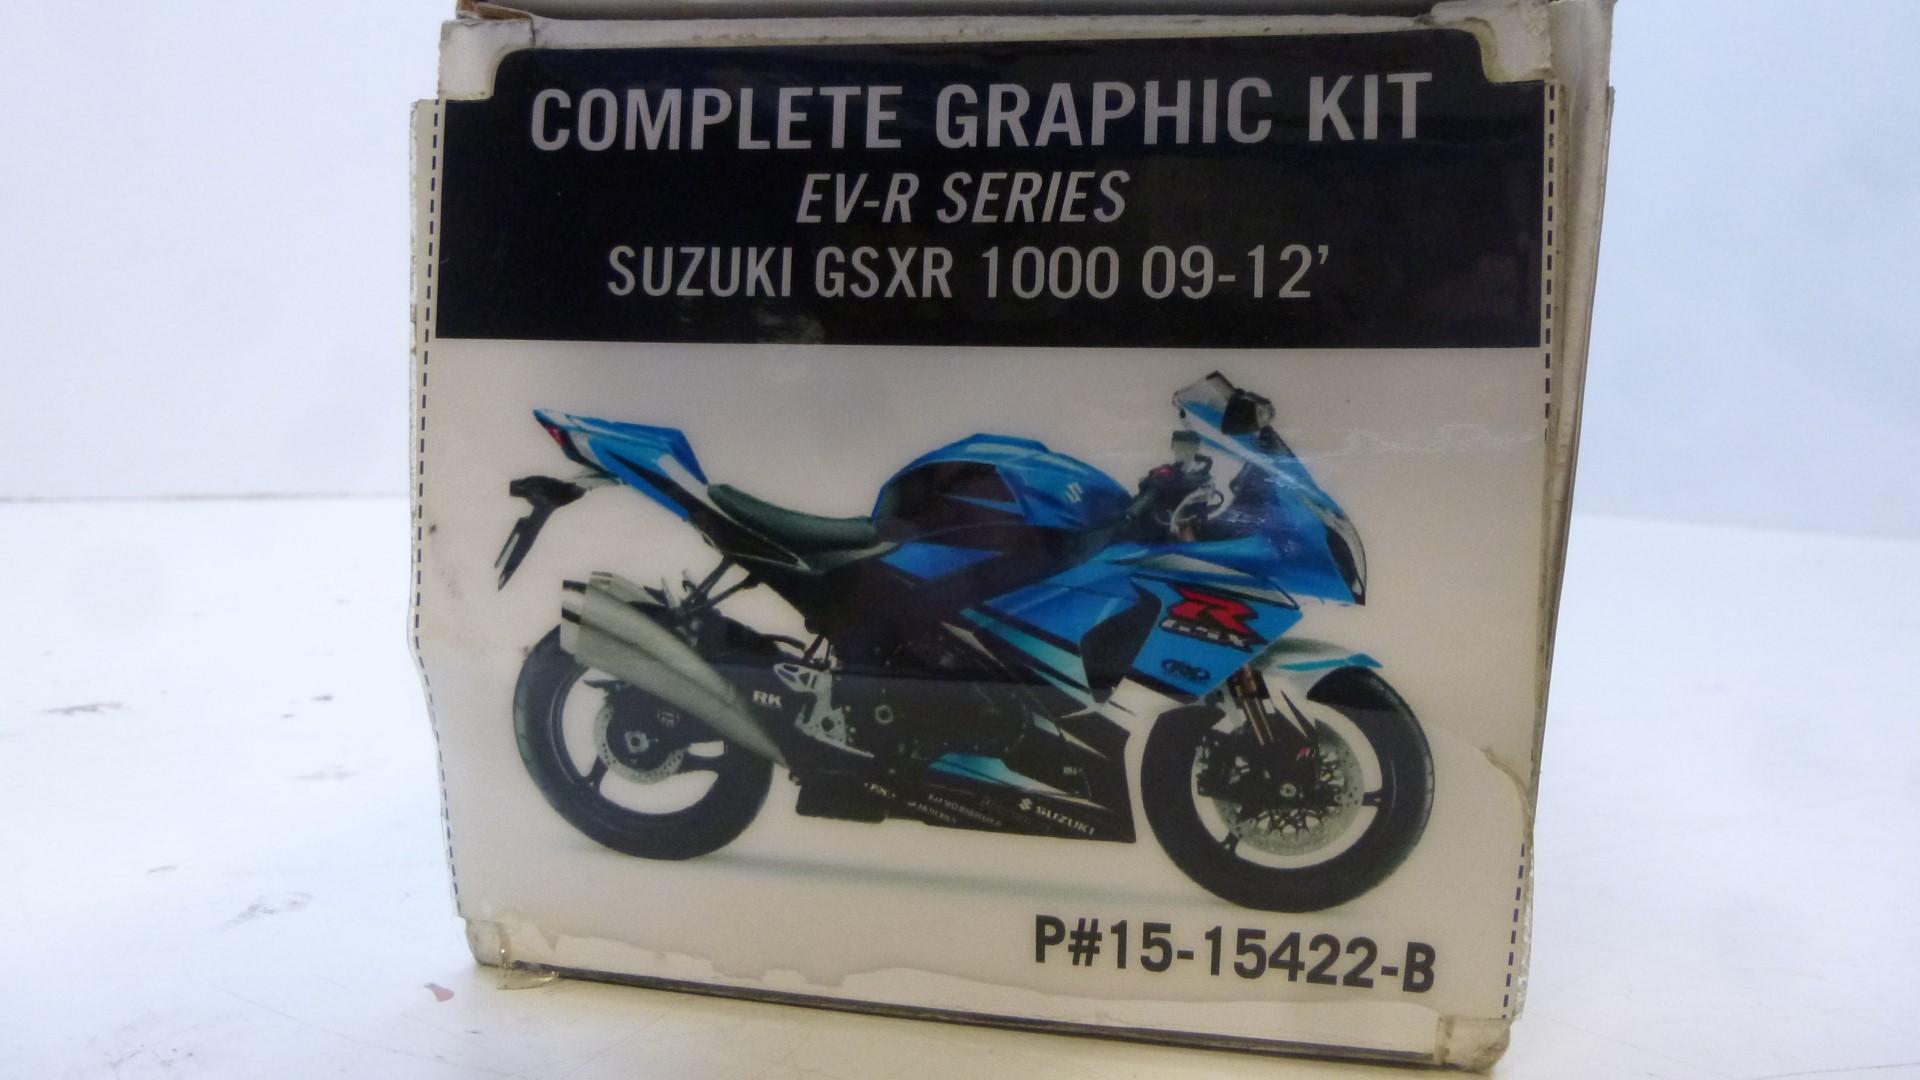 Dekorsatz Aufkleber Sticker Verkleidung graphic kit für Suzuki Gsxr 1000 09-12 1